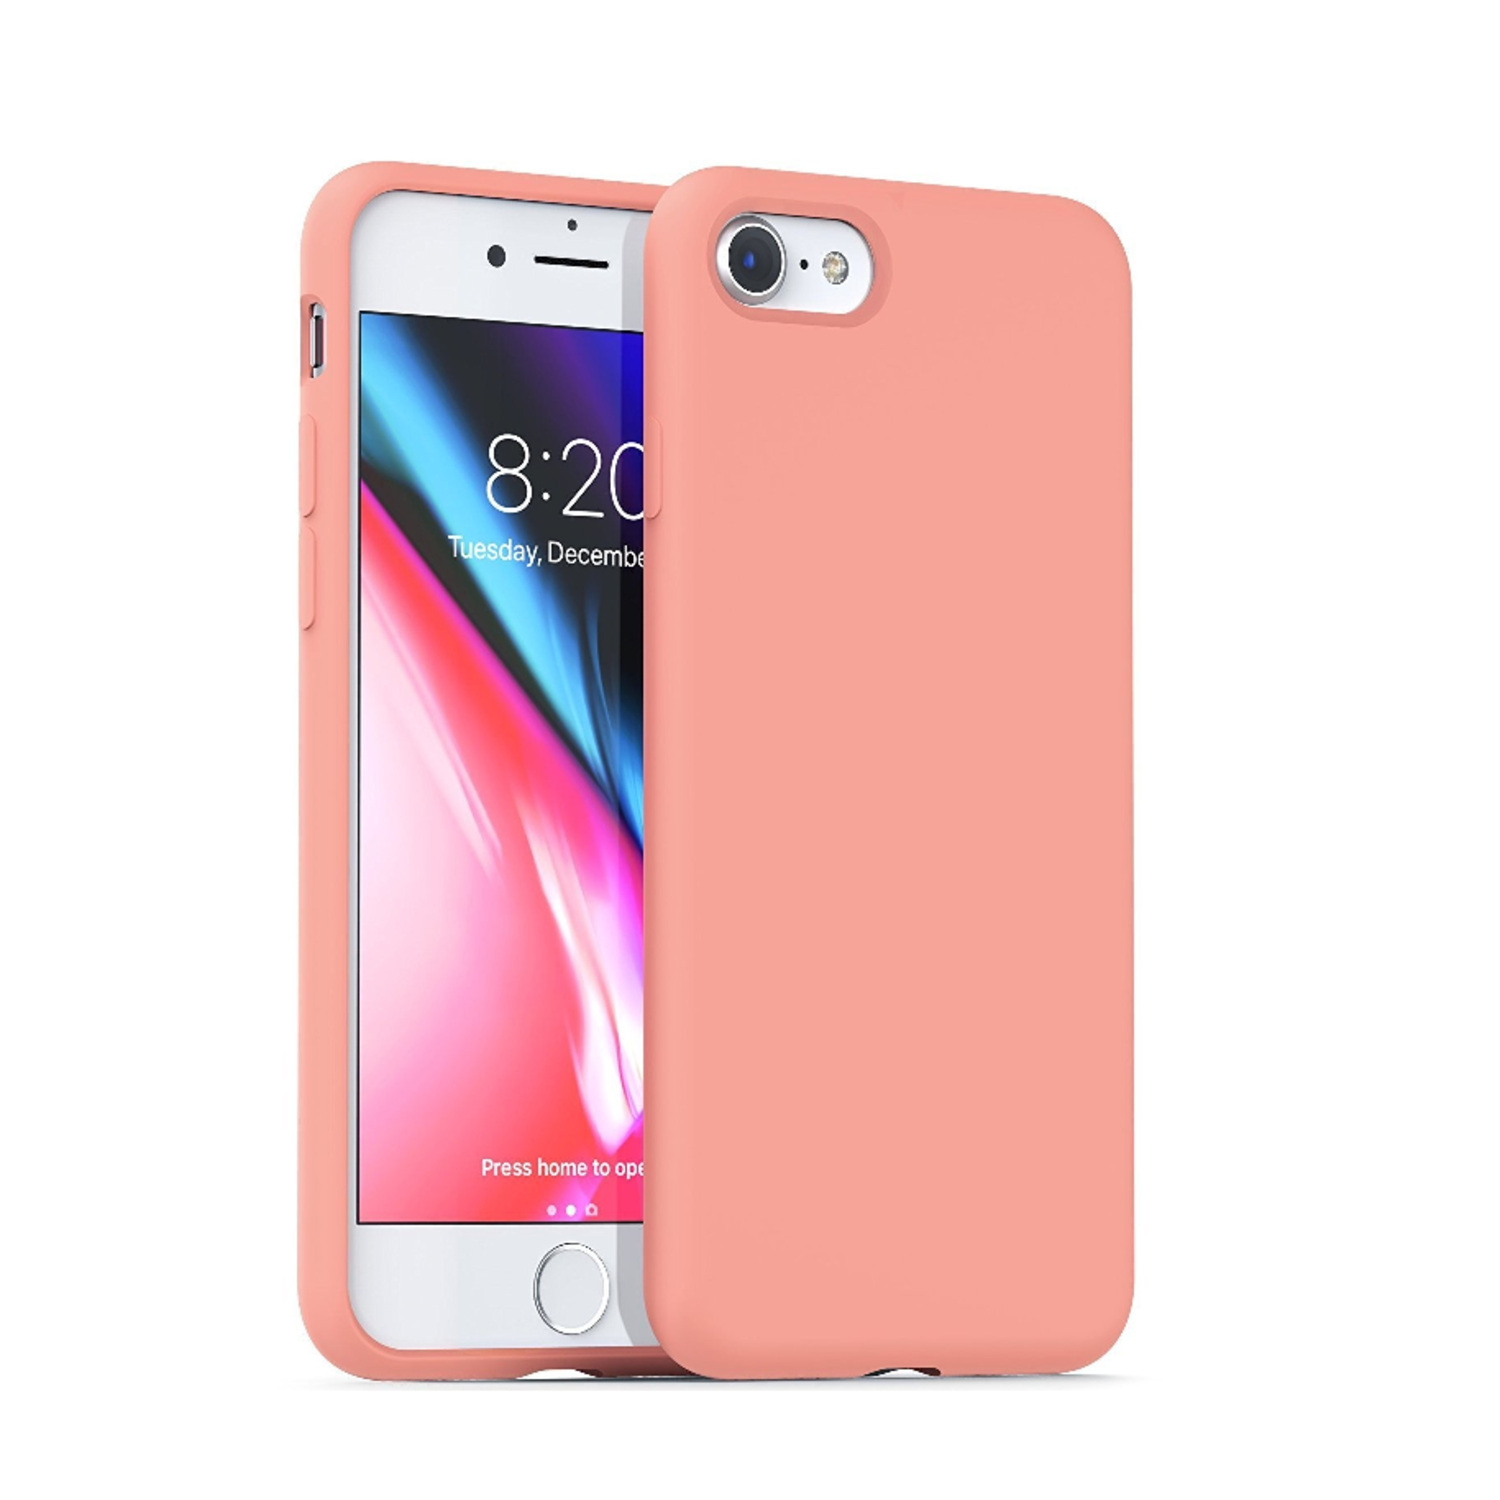 Skalk Bereid baden iPhone SE 2020 hoesje siliconen (roze) - Phone-Factory